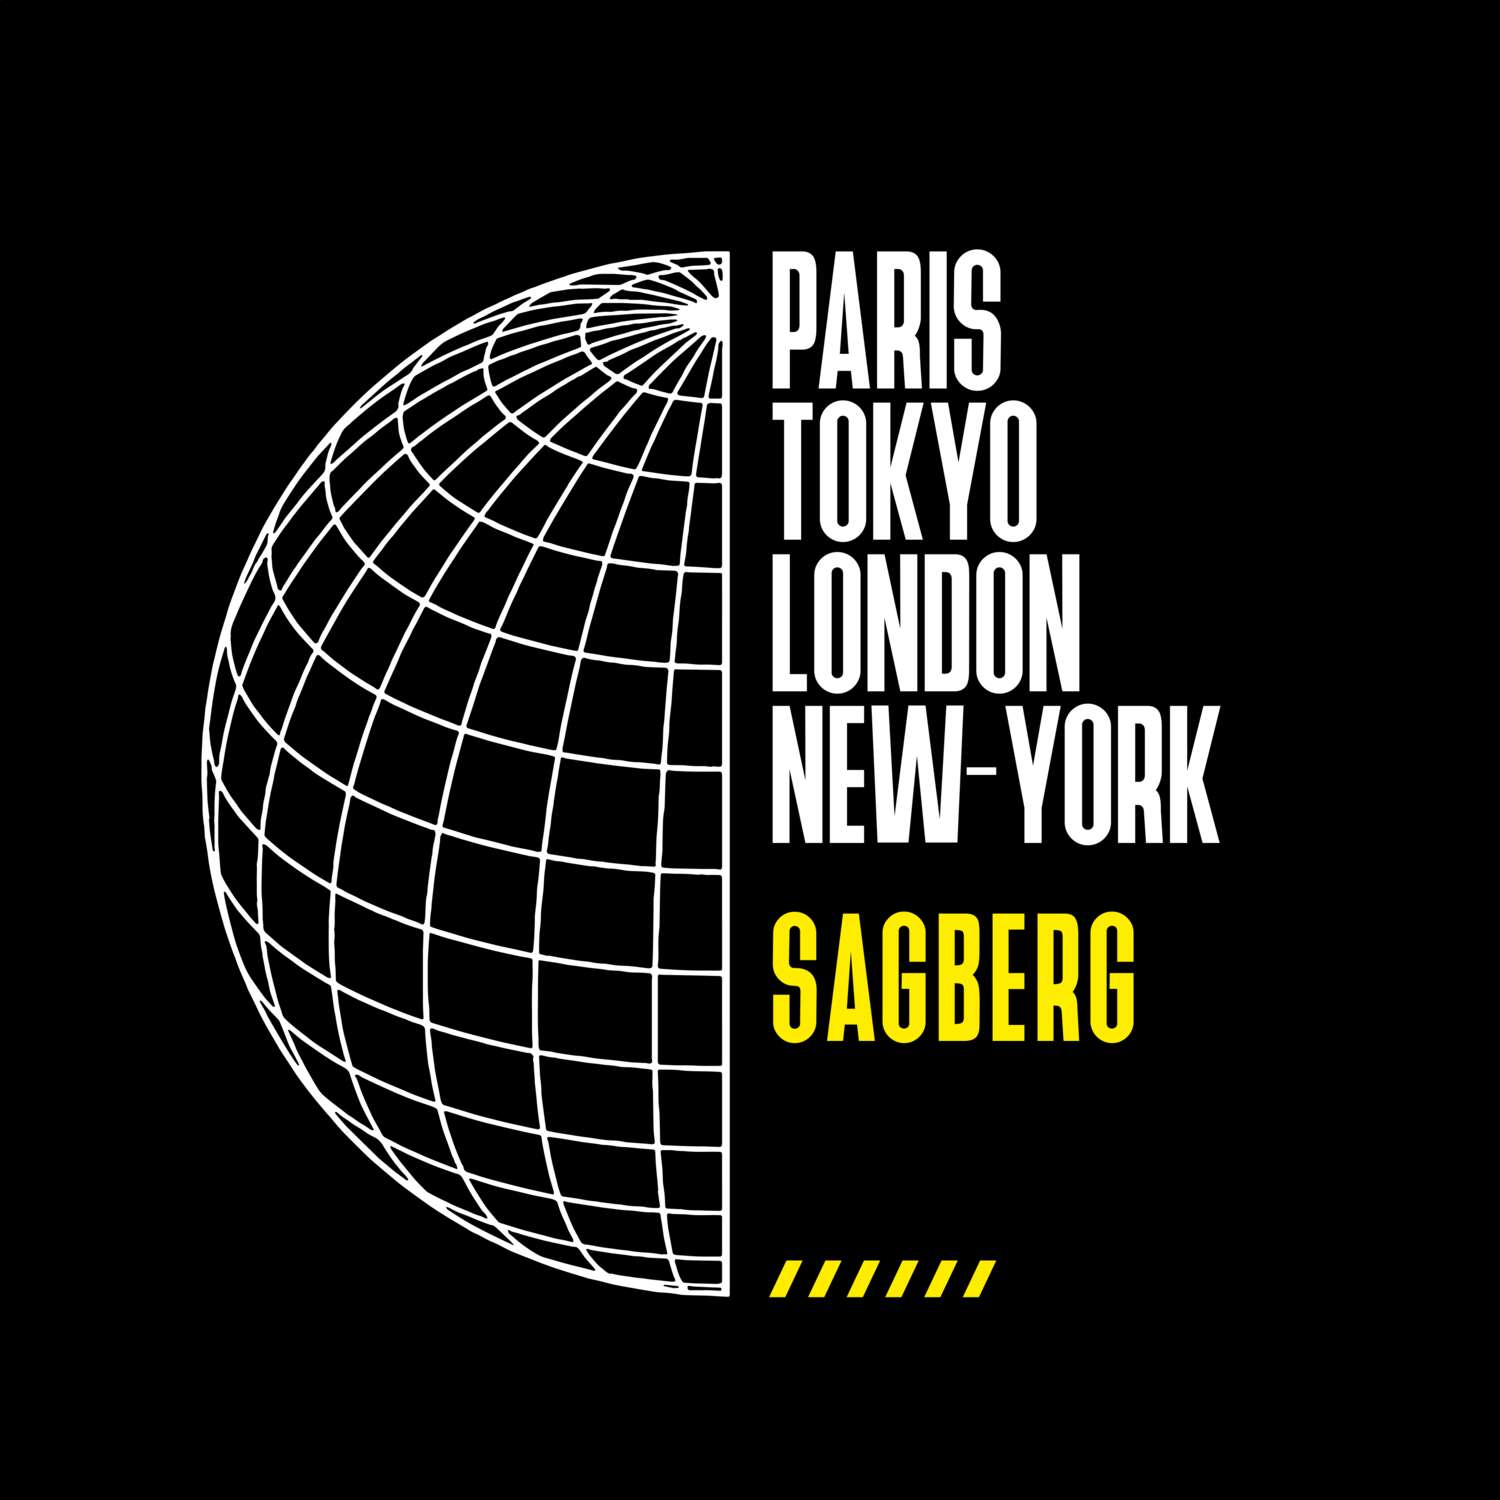 Sagberg T-Shirt »Paris Tokyo London«